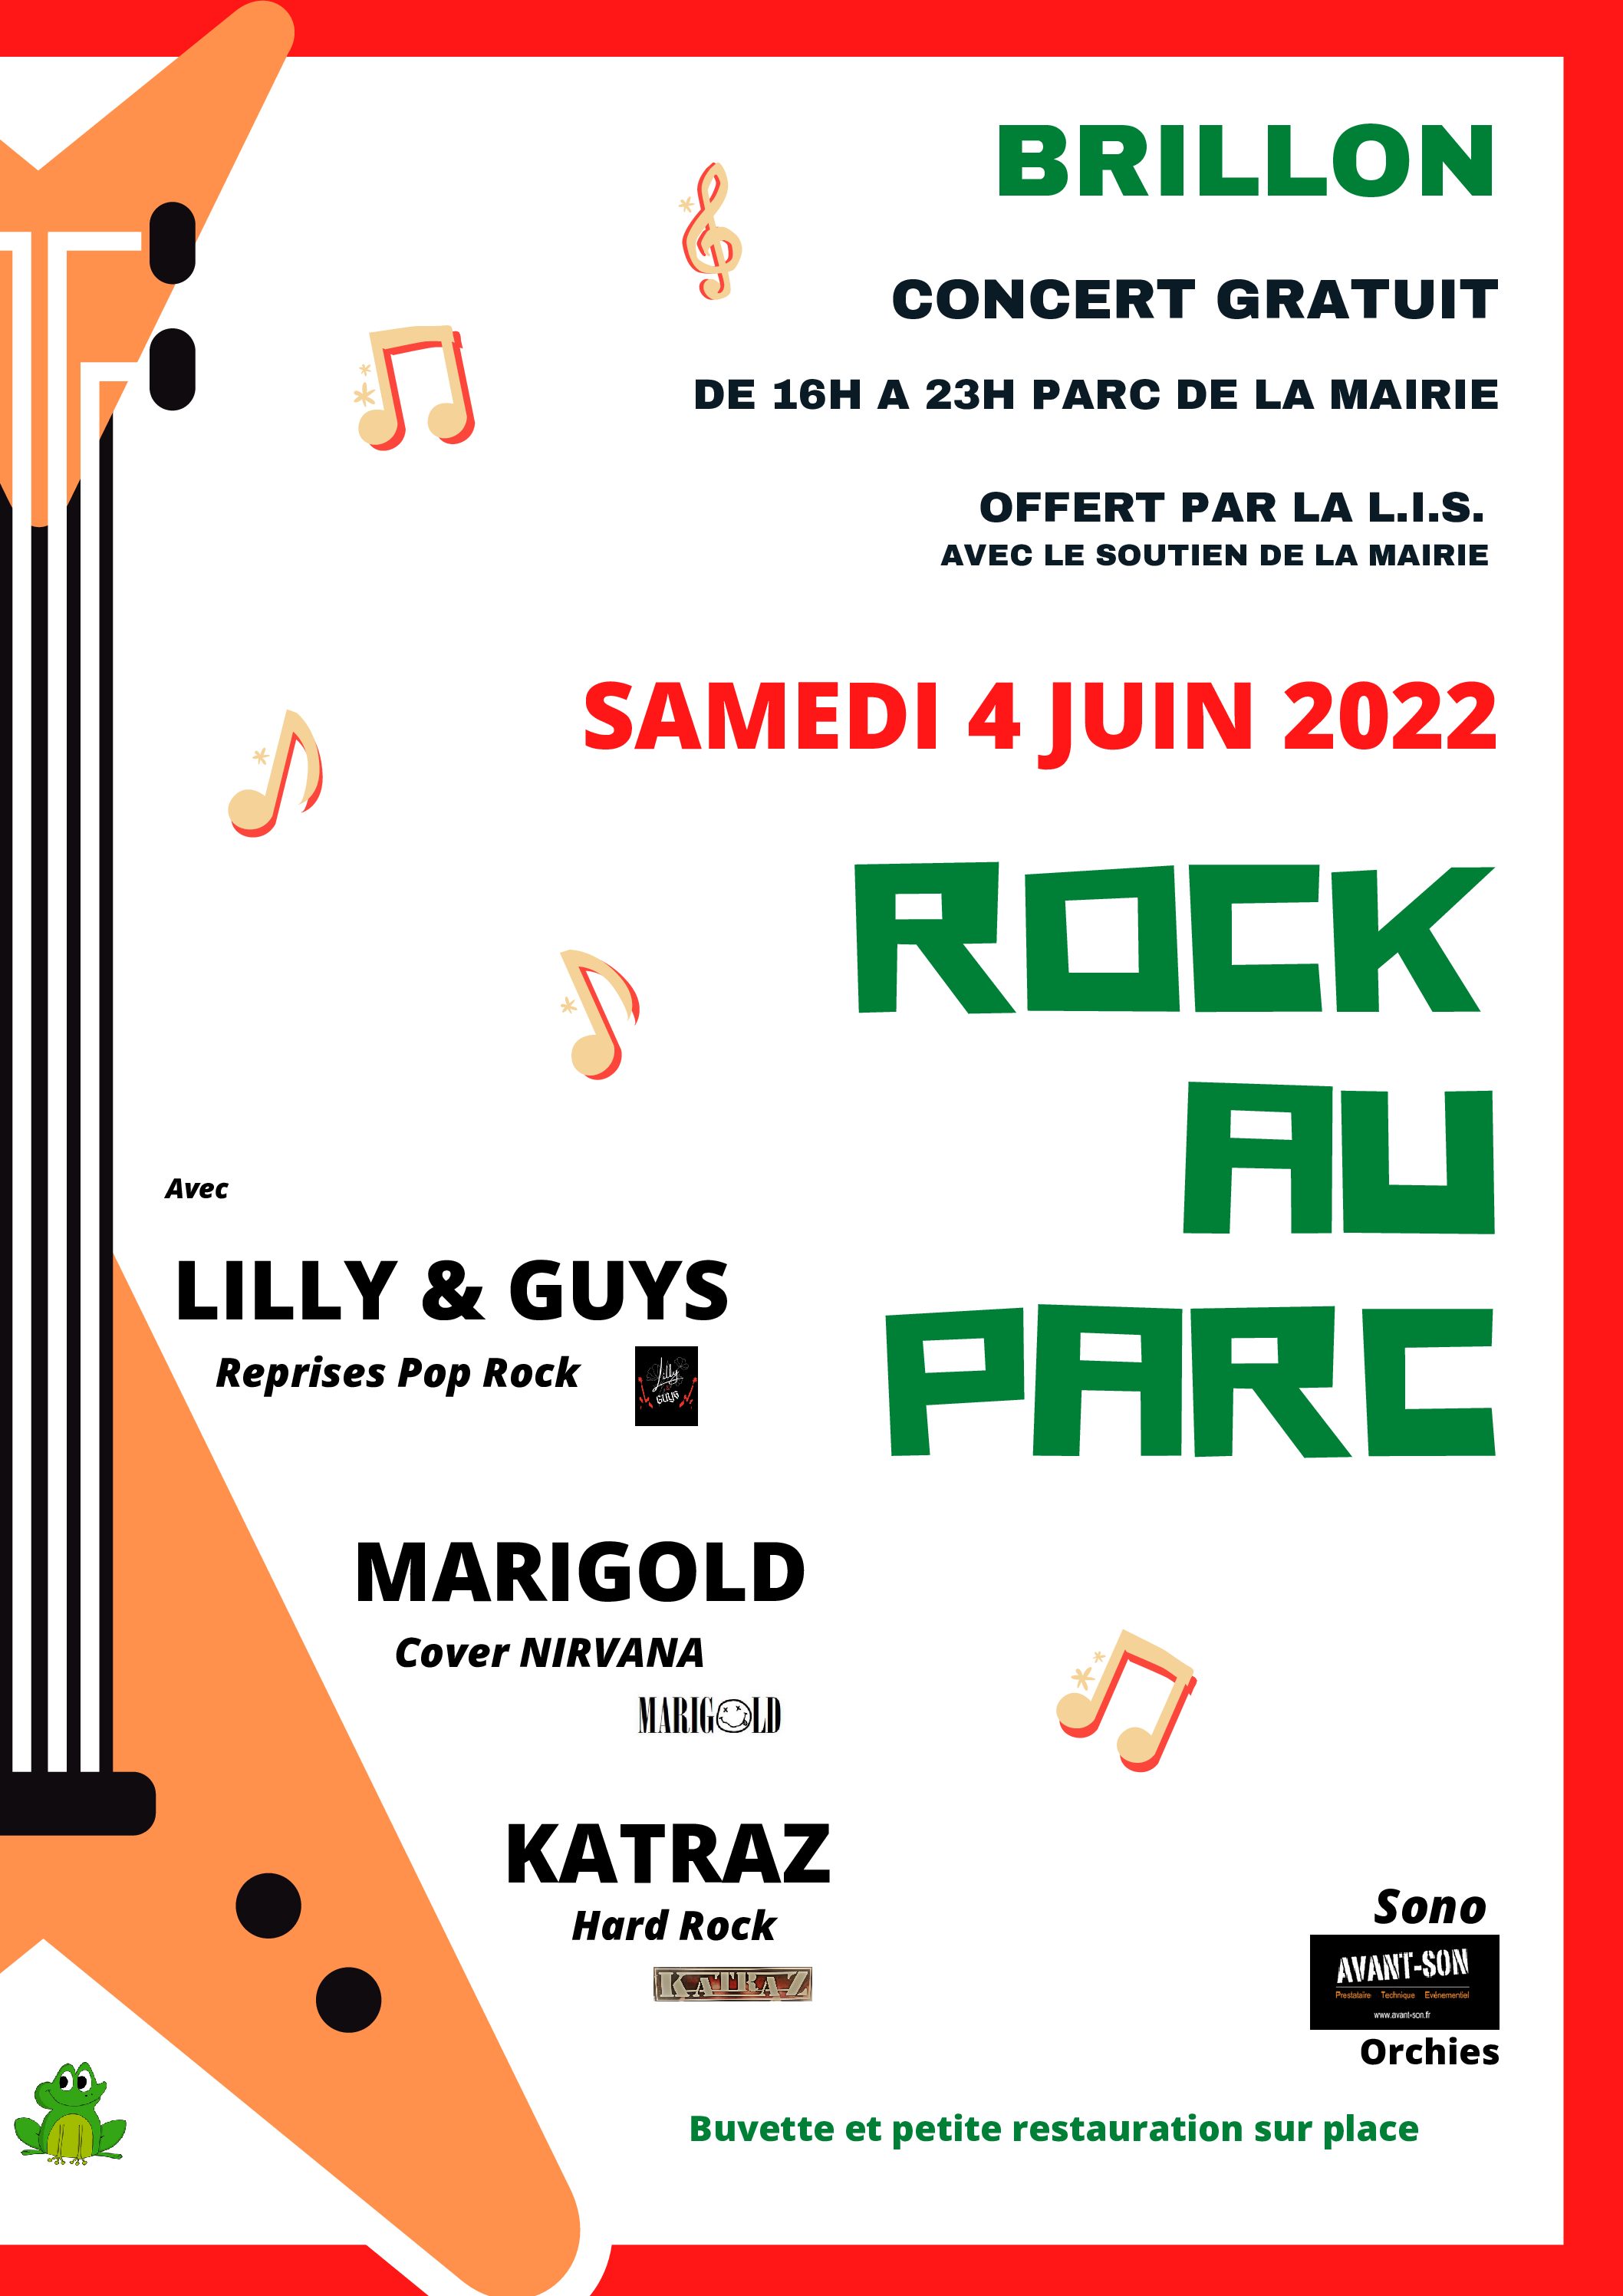 ROCK : Concert Brillon samedi 4 juin 2022